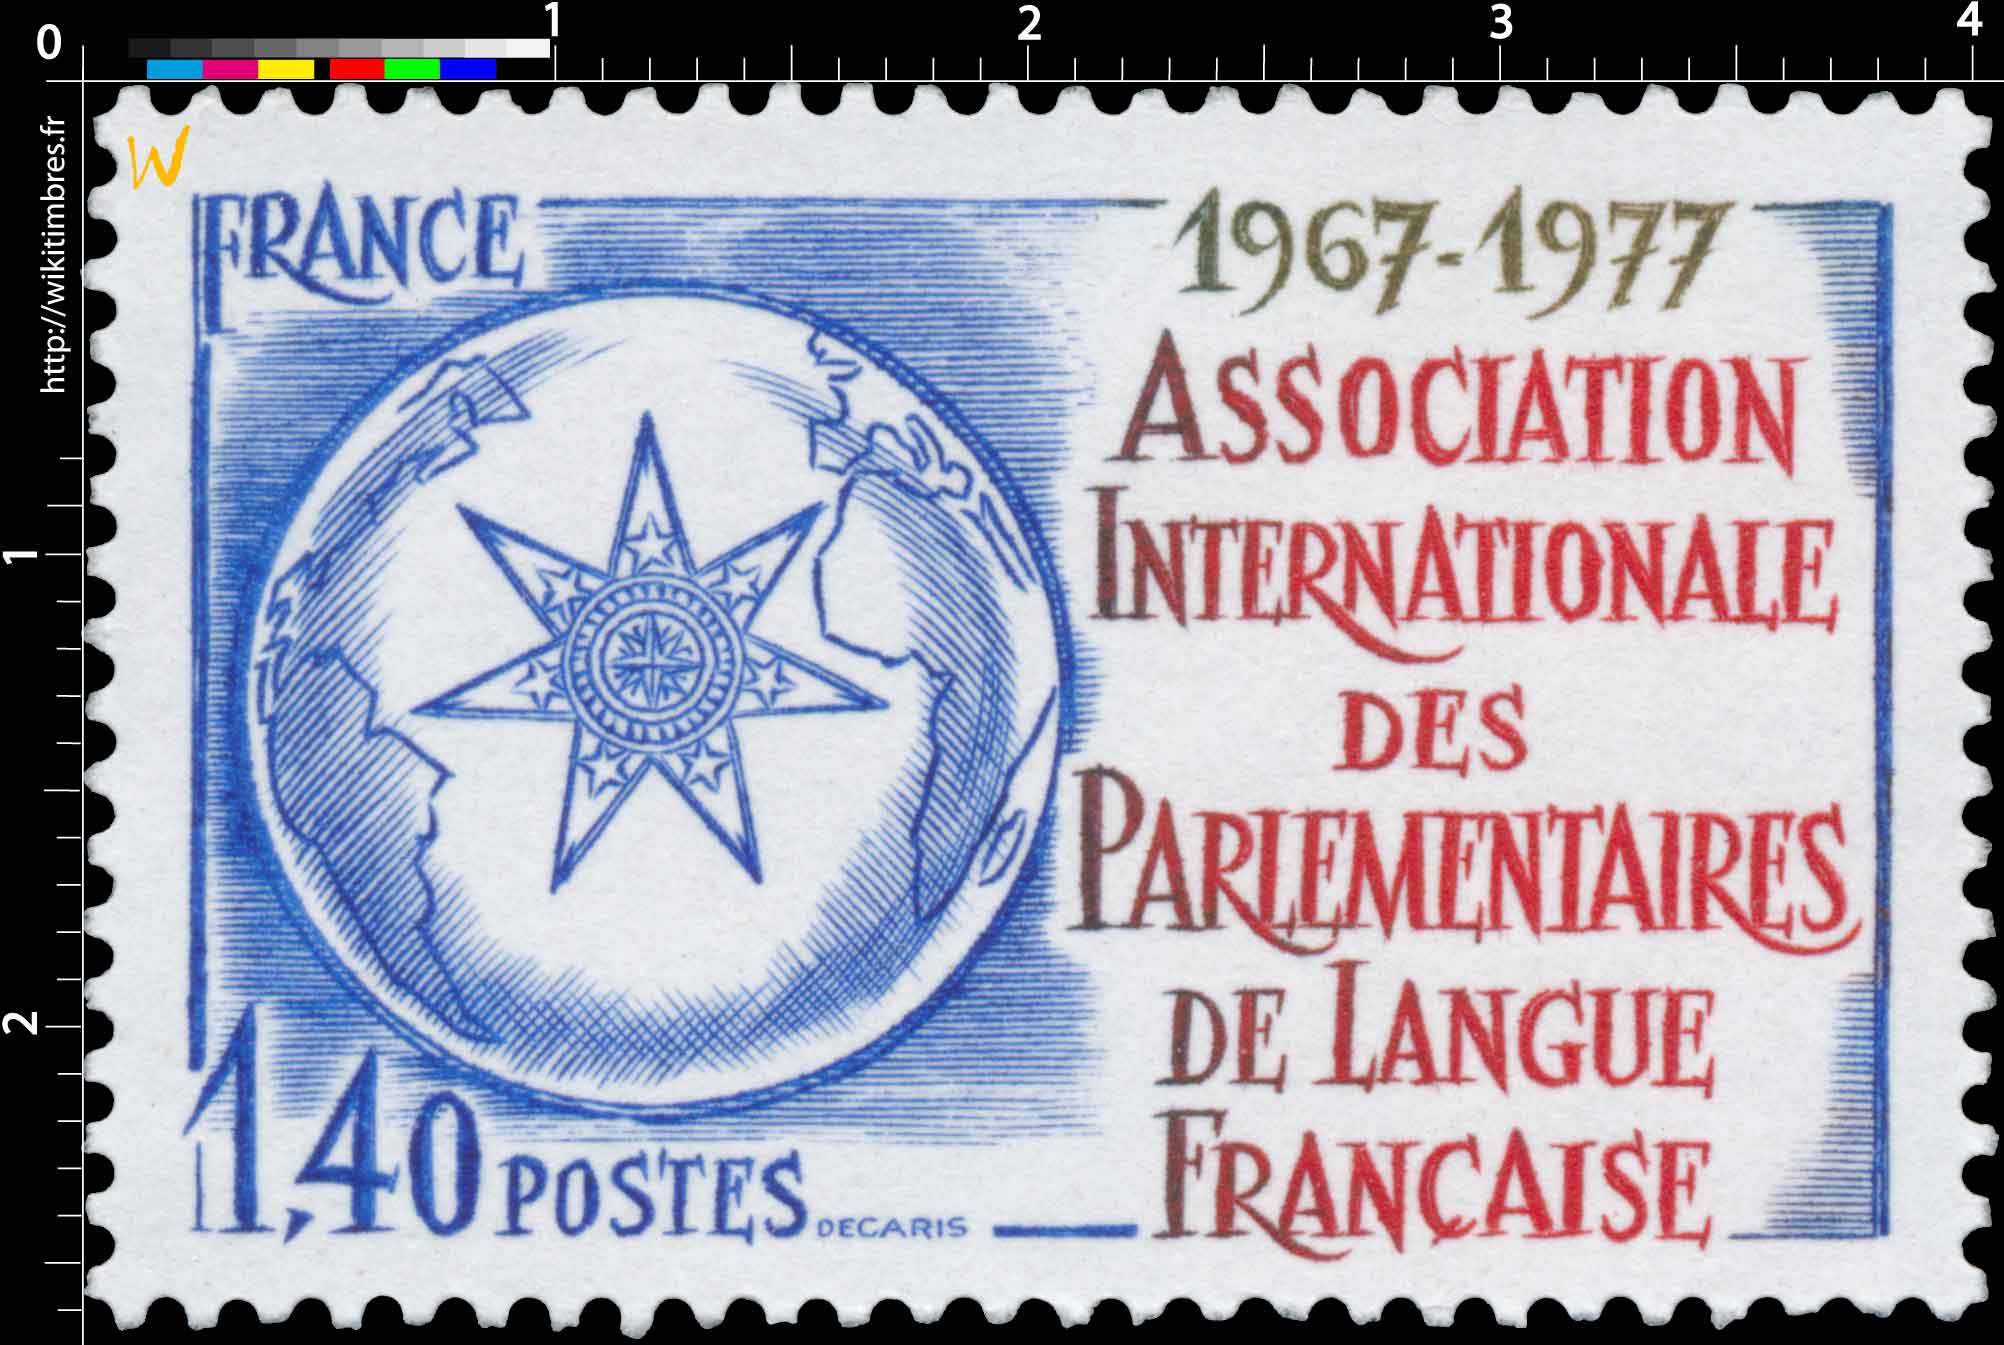 ASSOCIATION INTERNATIONALE DES PARLEMENTAIRES DE LANGUE FRANÇAISE 1967-1977